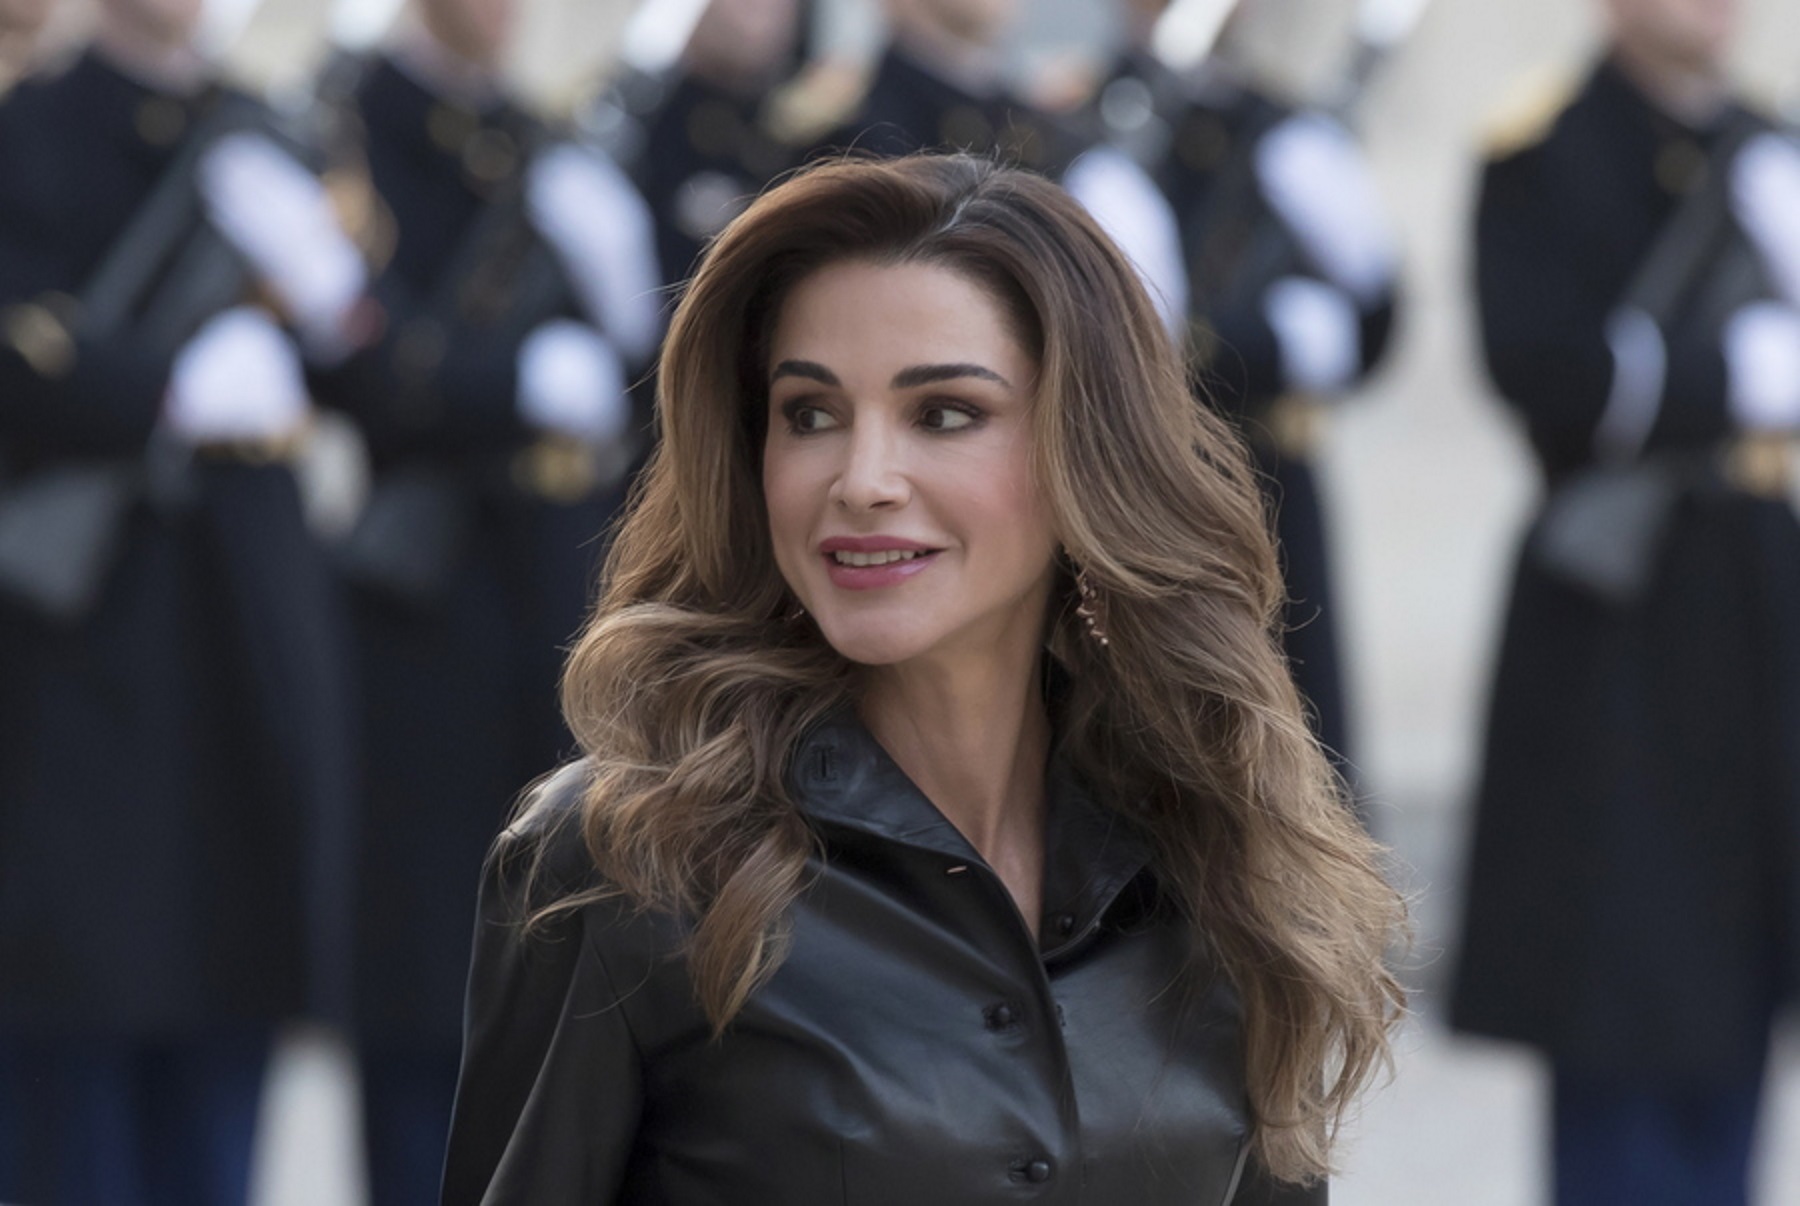 Η Βασίλισσα Ράνια της Ιορδανίας αρραβώνιασε την κόρη της – Οι ελληνικές ρίζες του γαμπρού